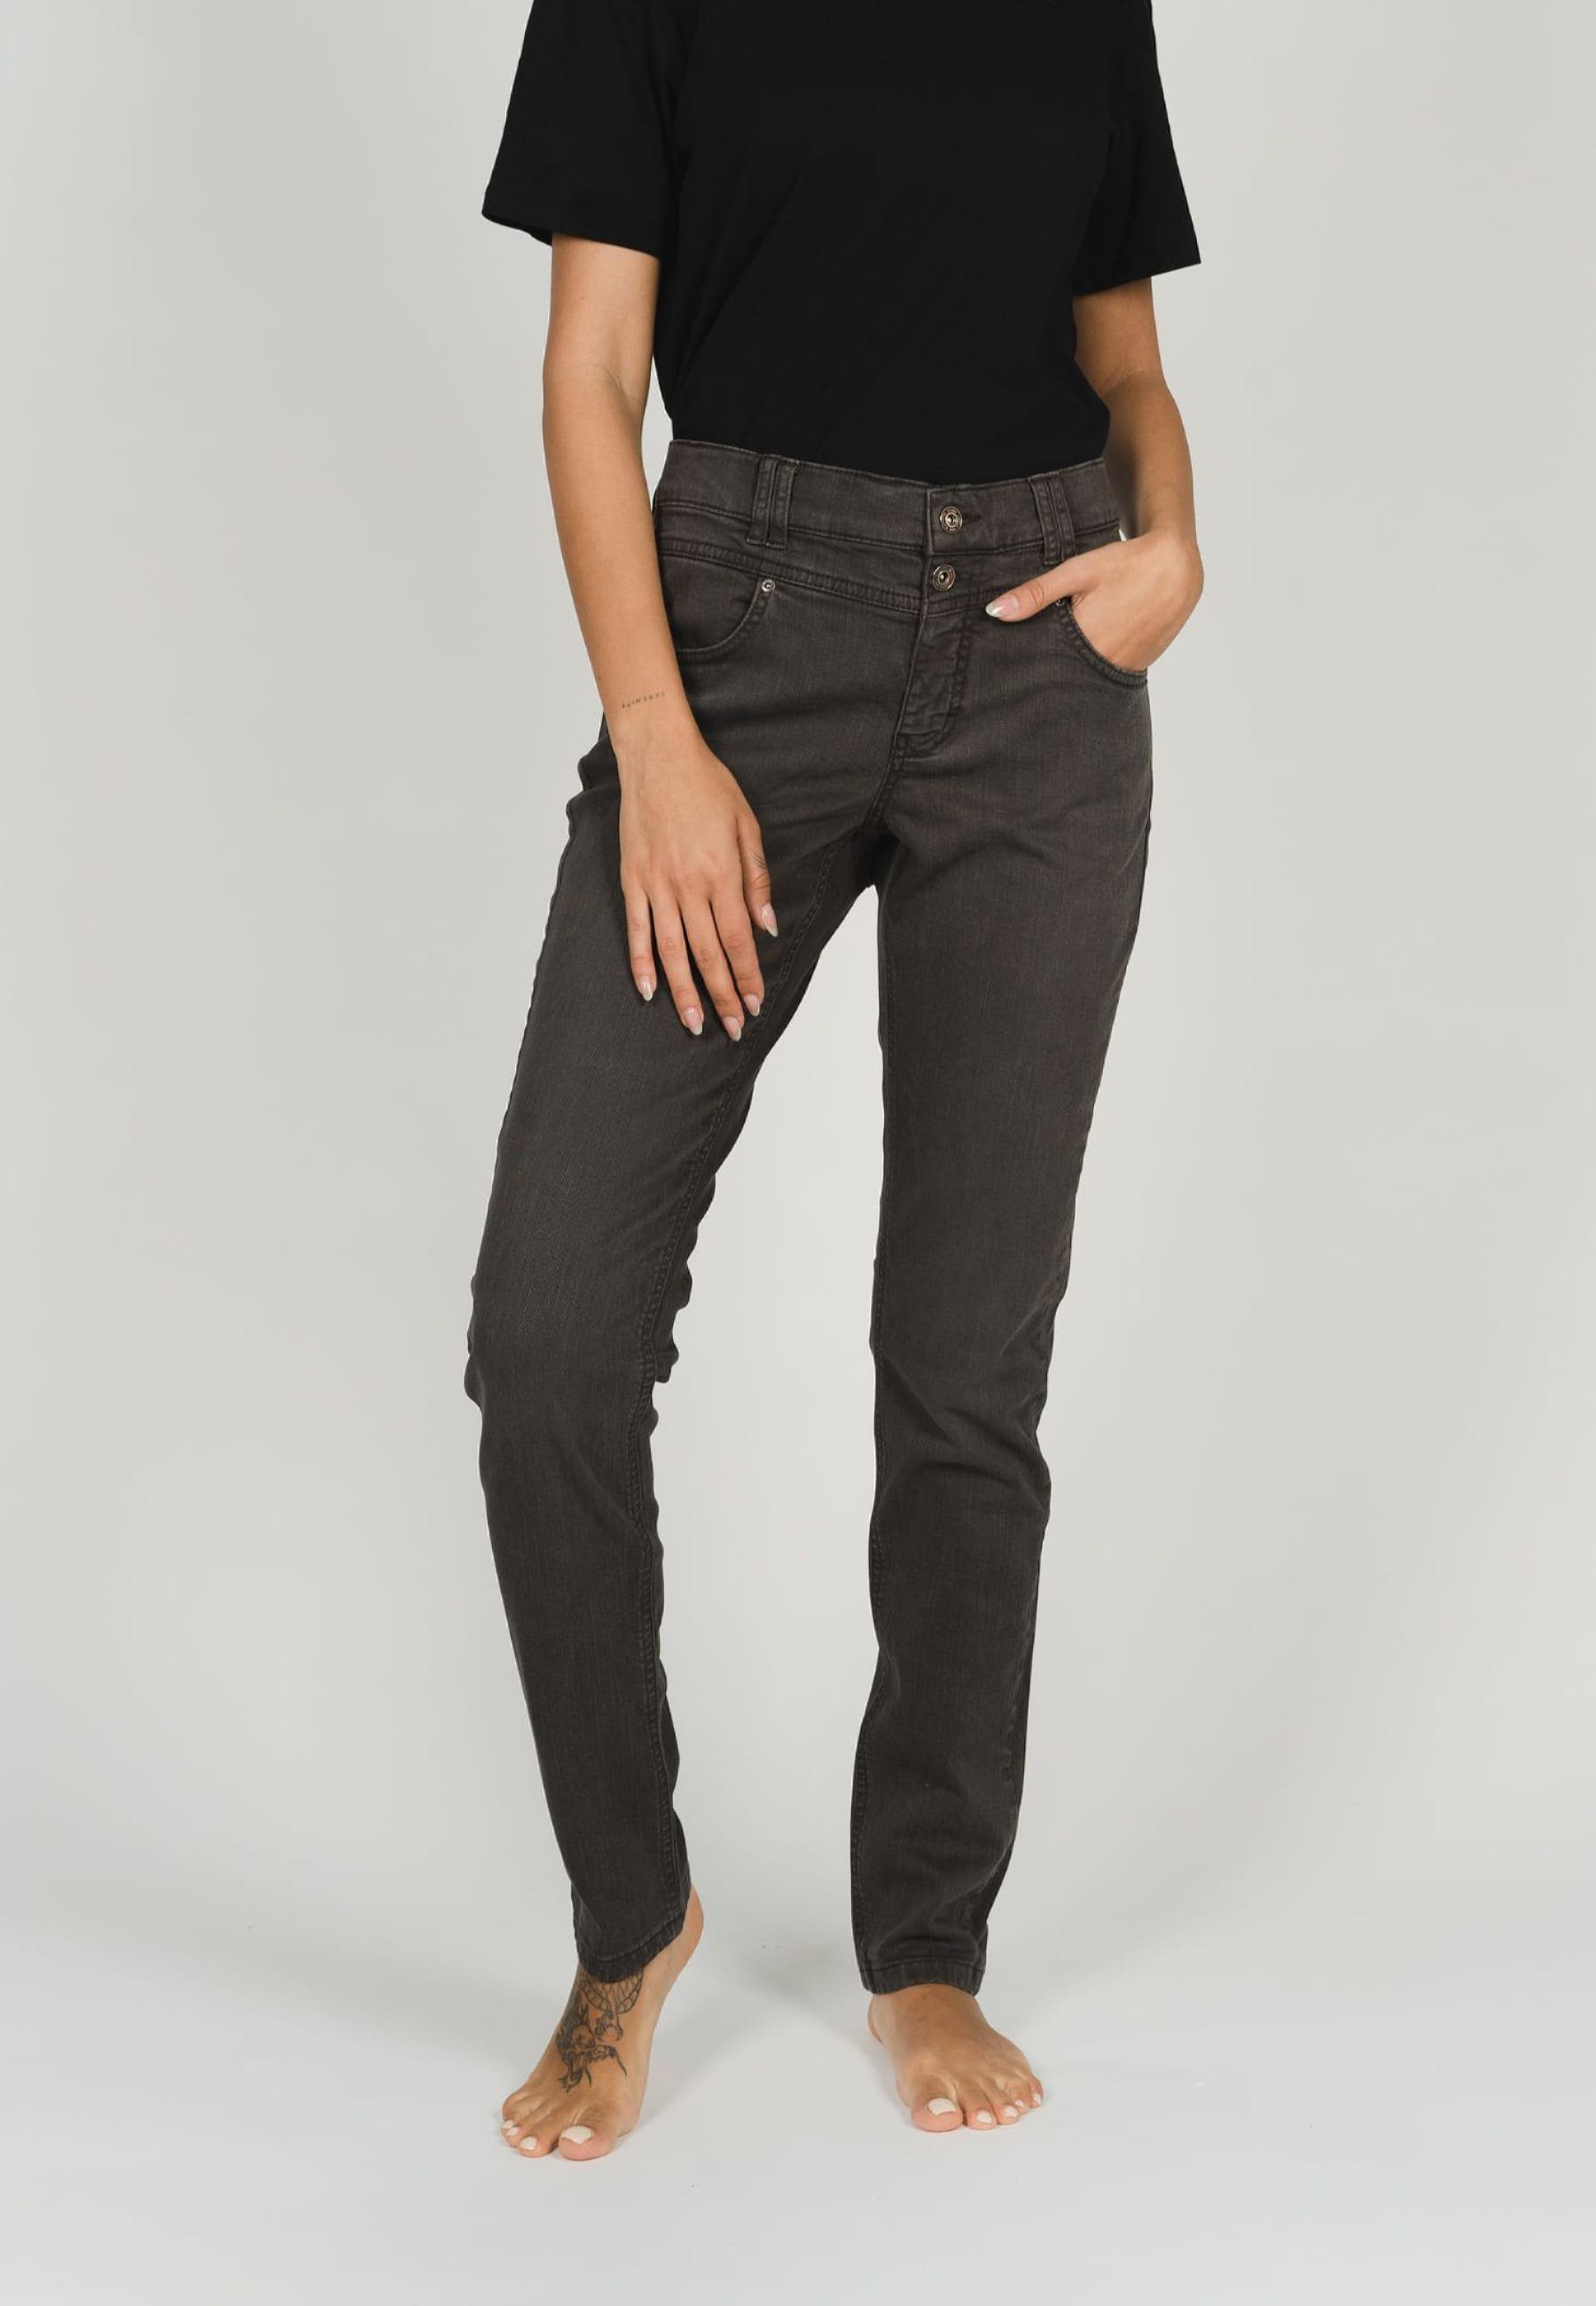 Coloured Slim-fit-Jeans Skinny Button Denim, mit Hochwertige Jeans Baumwollmischung ANGELS